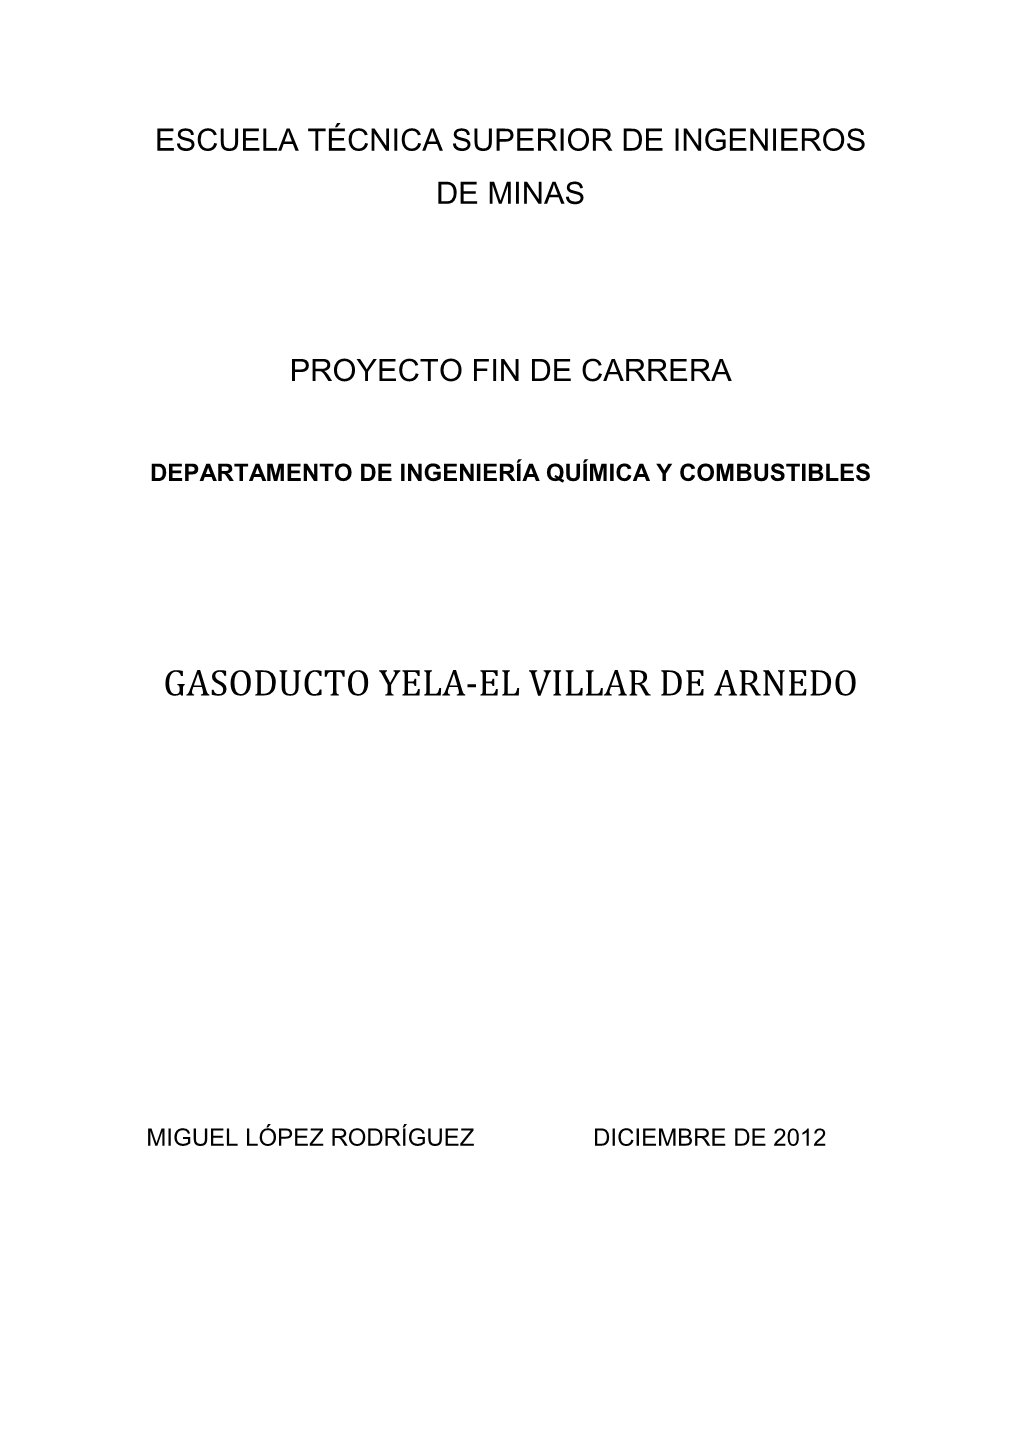 Gasoducto Yela-El Villar De Arnedo